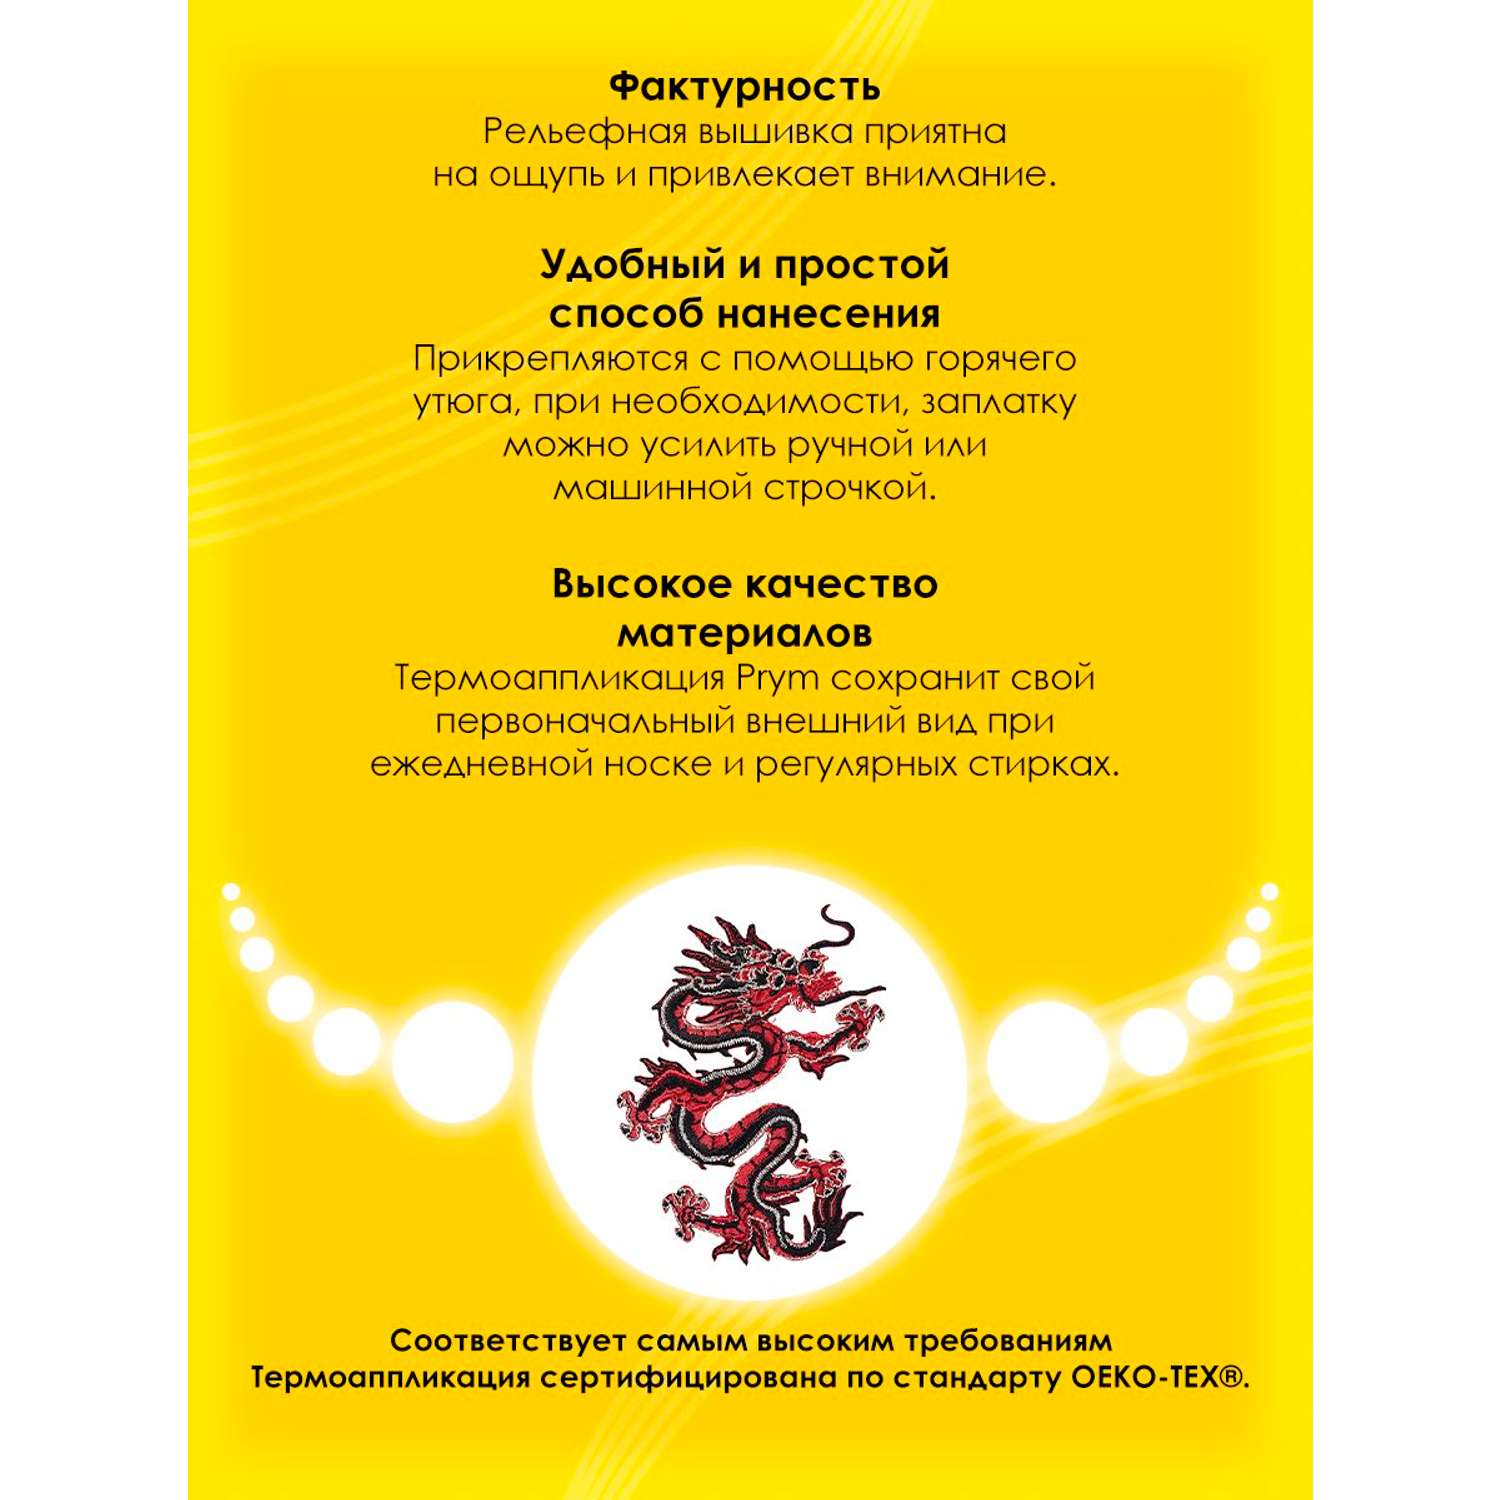 Термоаппликация Prym нашивка Азиатский дракон 8.5х7.5 см для ремонта и украшения одежды 926178 - фото 3